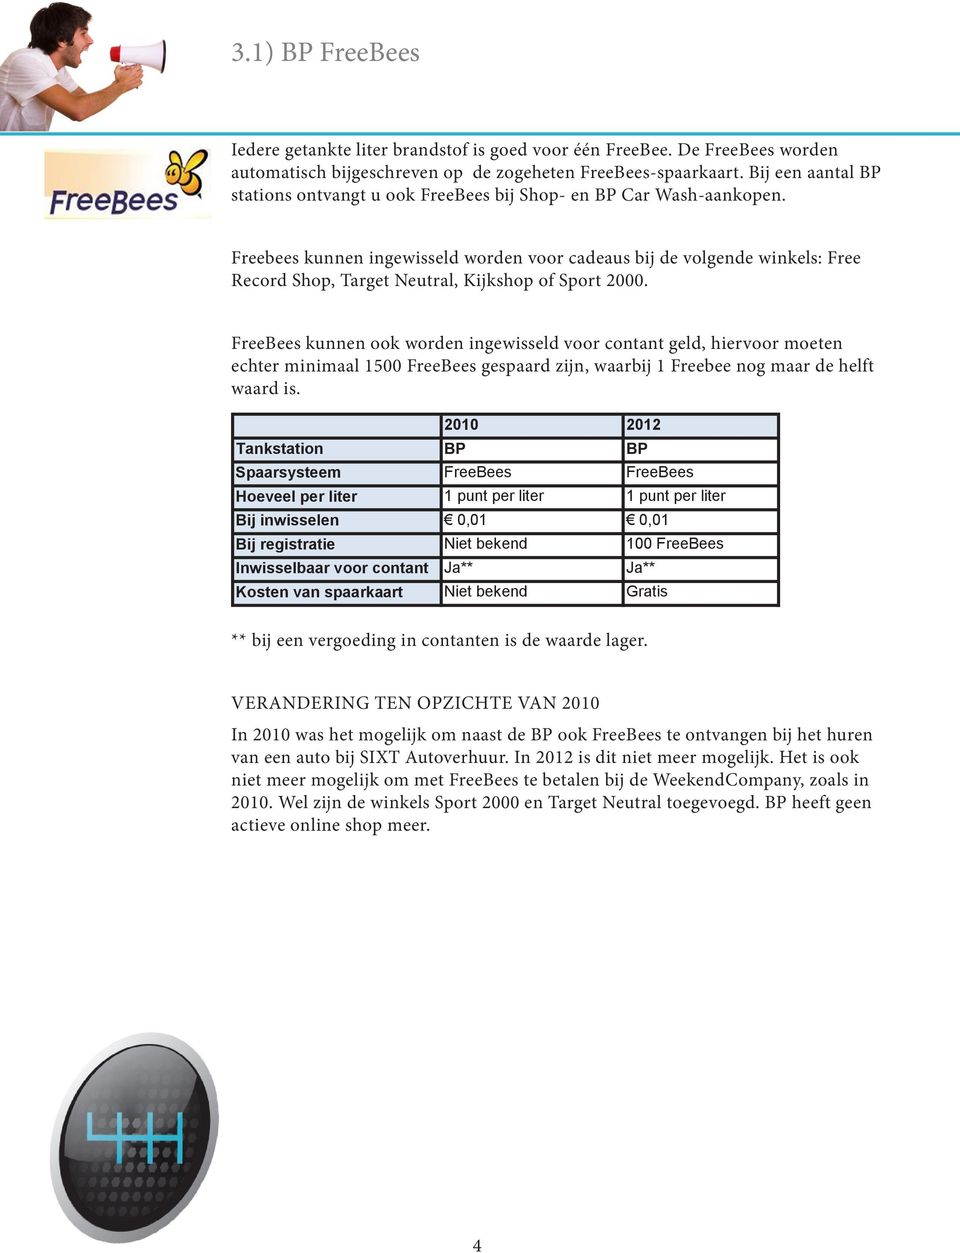 Freebees kunnen ingewisseld worden voor cadeaus bij de volgende winkels: Free Record Shop, Target Neutral, Kijkshop of Sport 2000.